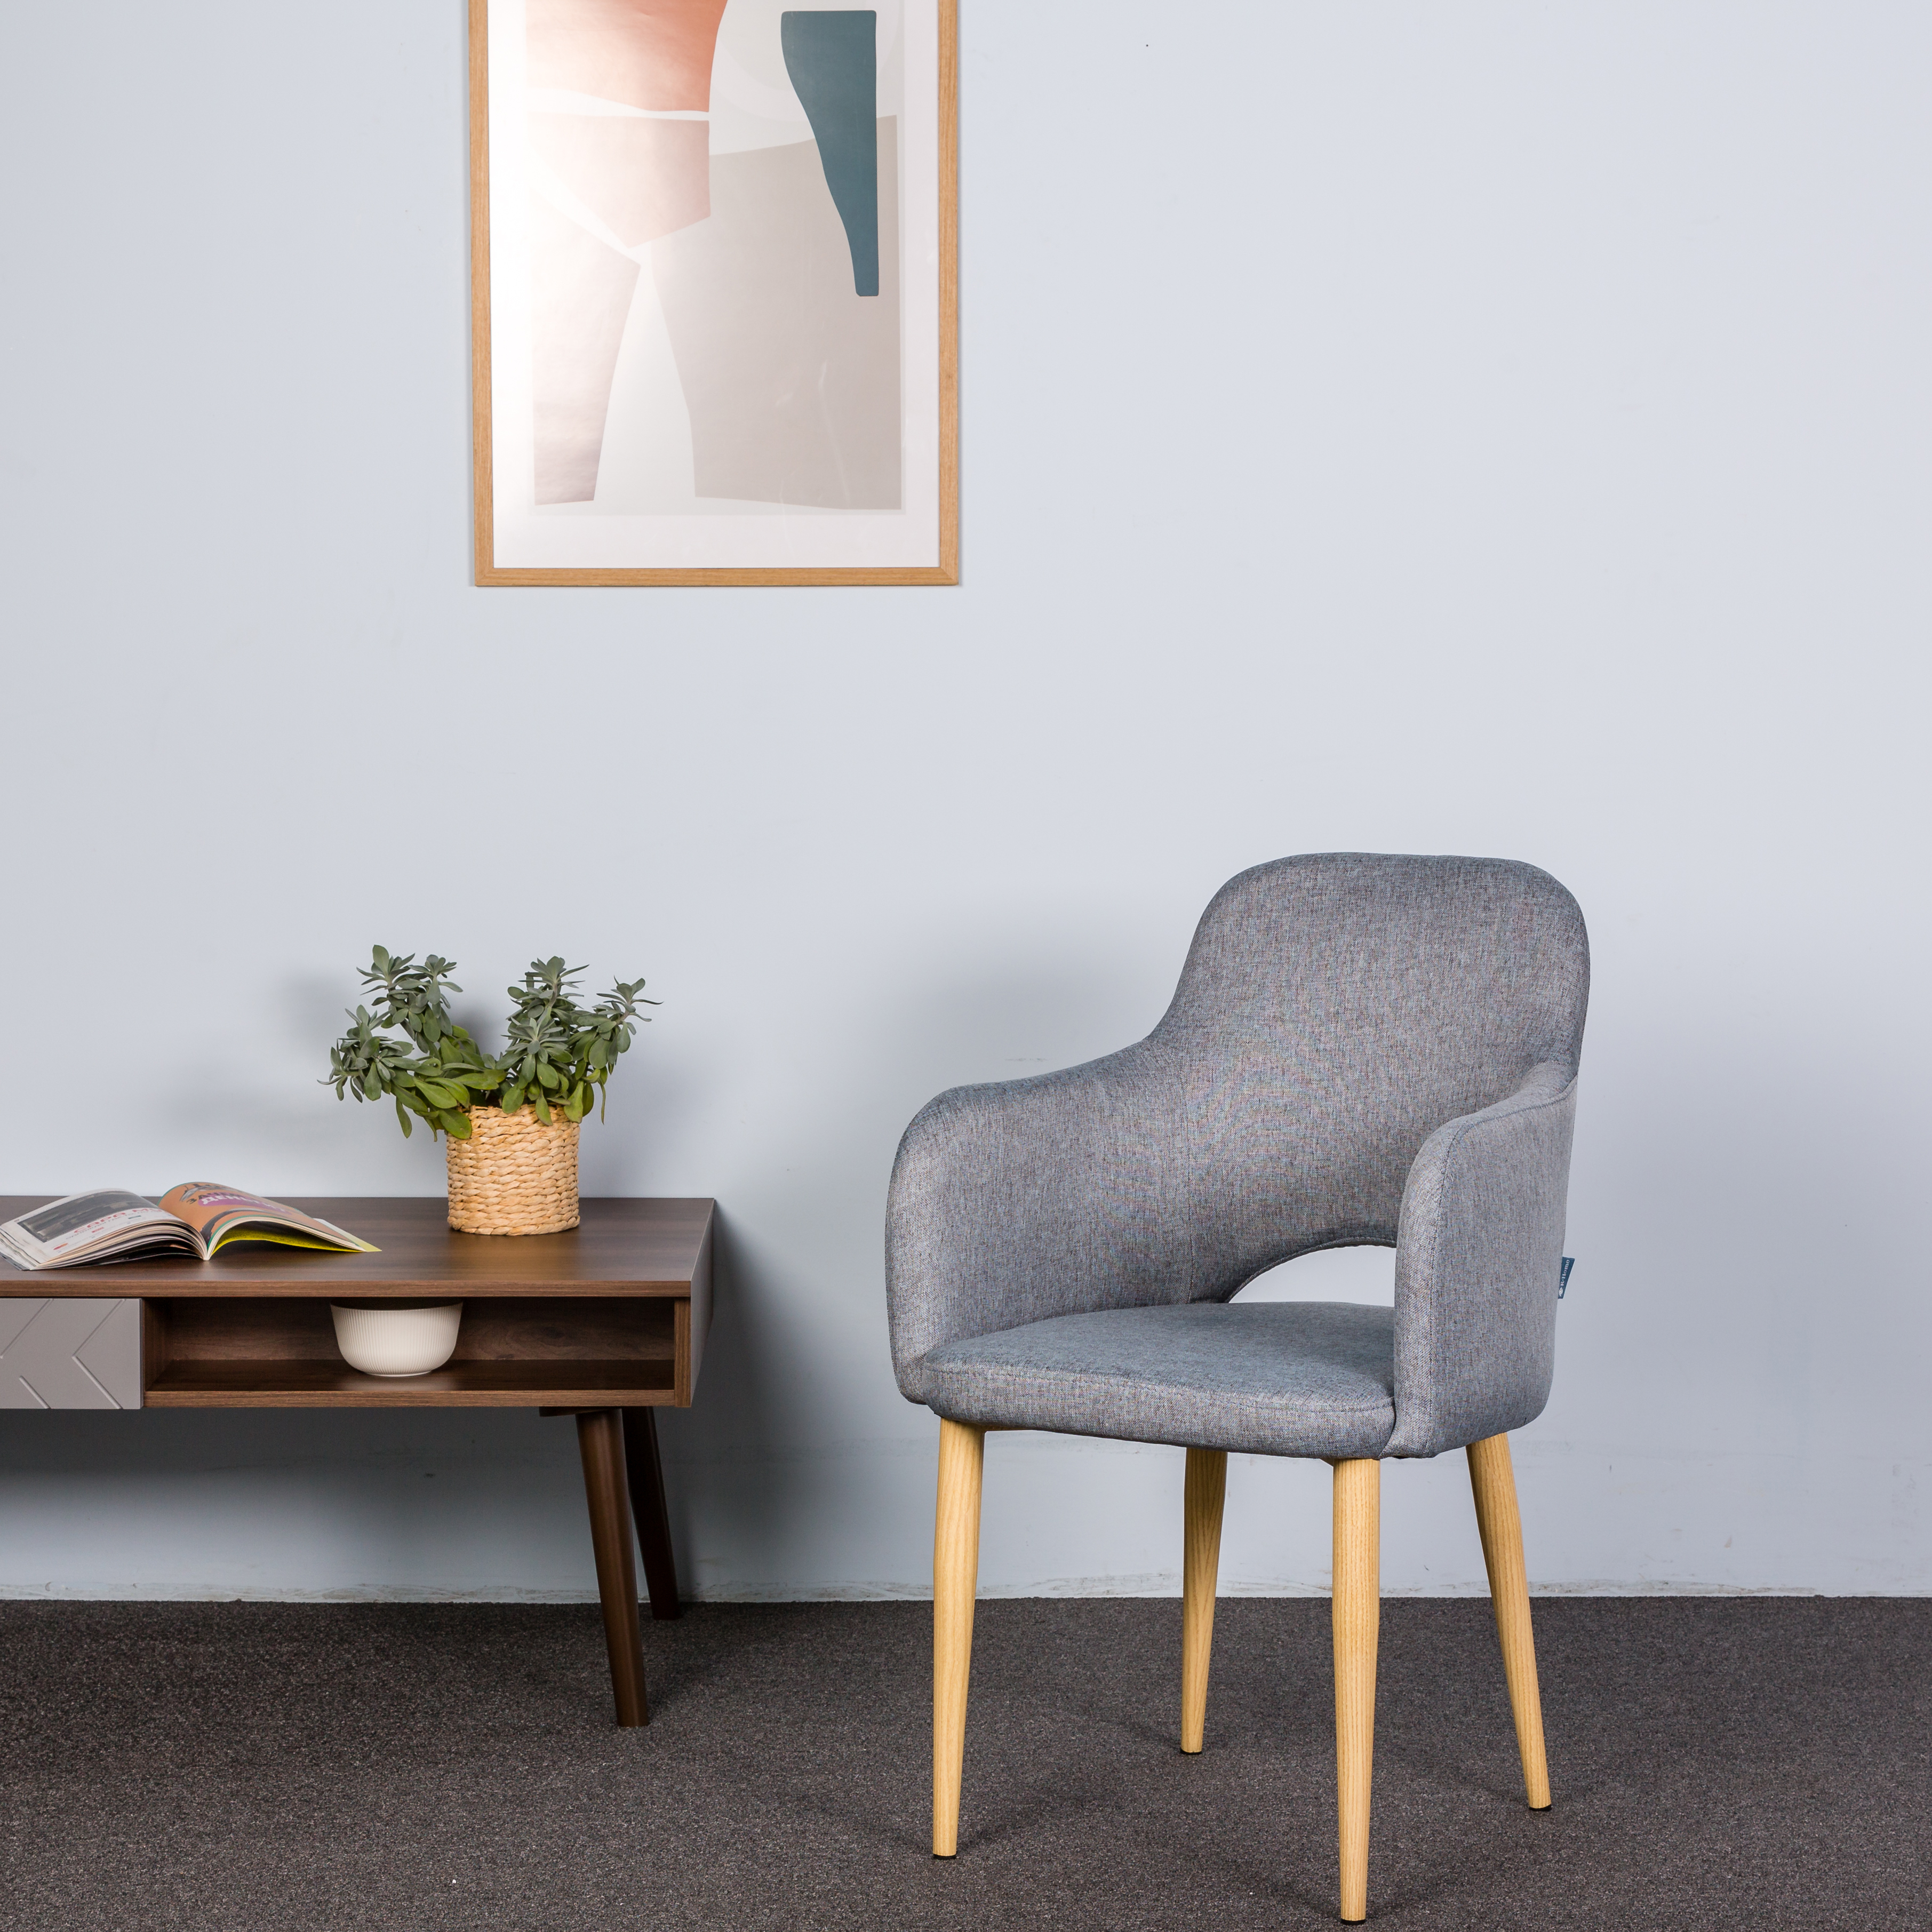 Кресло R-Home Ledger, Сканди, размер 56.5x60.5x87.5 см, цвет: Грей Ндуб(41012440_ГрейНДуб)41012440_ГрейНДуб